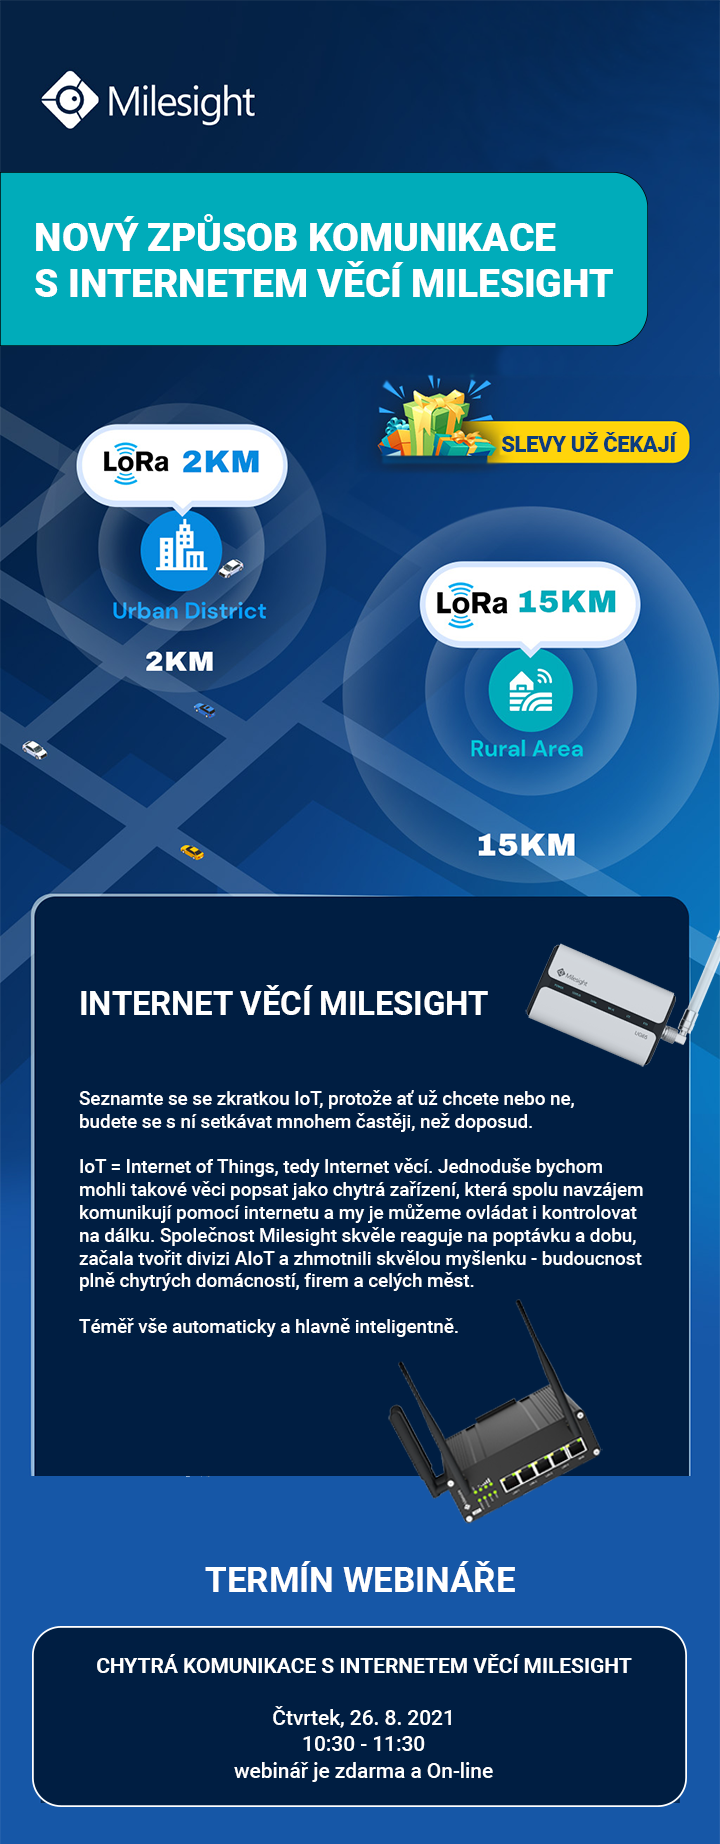 Milesight CCTV Internet věcí AIoT IoT Internet of Things webinář živě live zdarma slevy akce novinky Eurosat CS Česká republika zabezpečovací technologie 